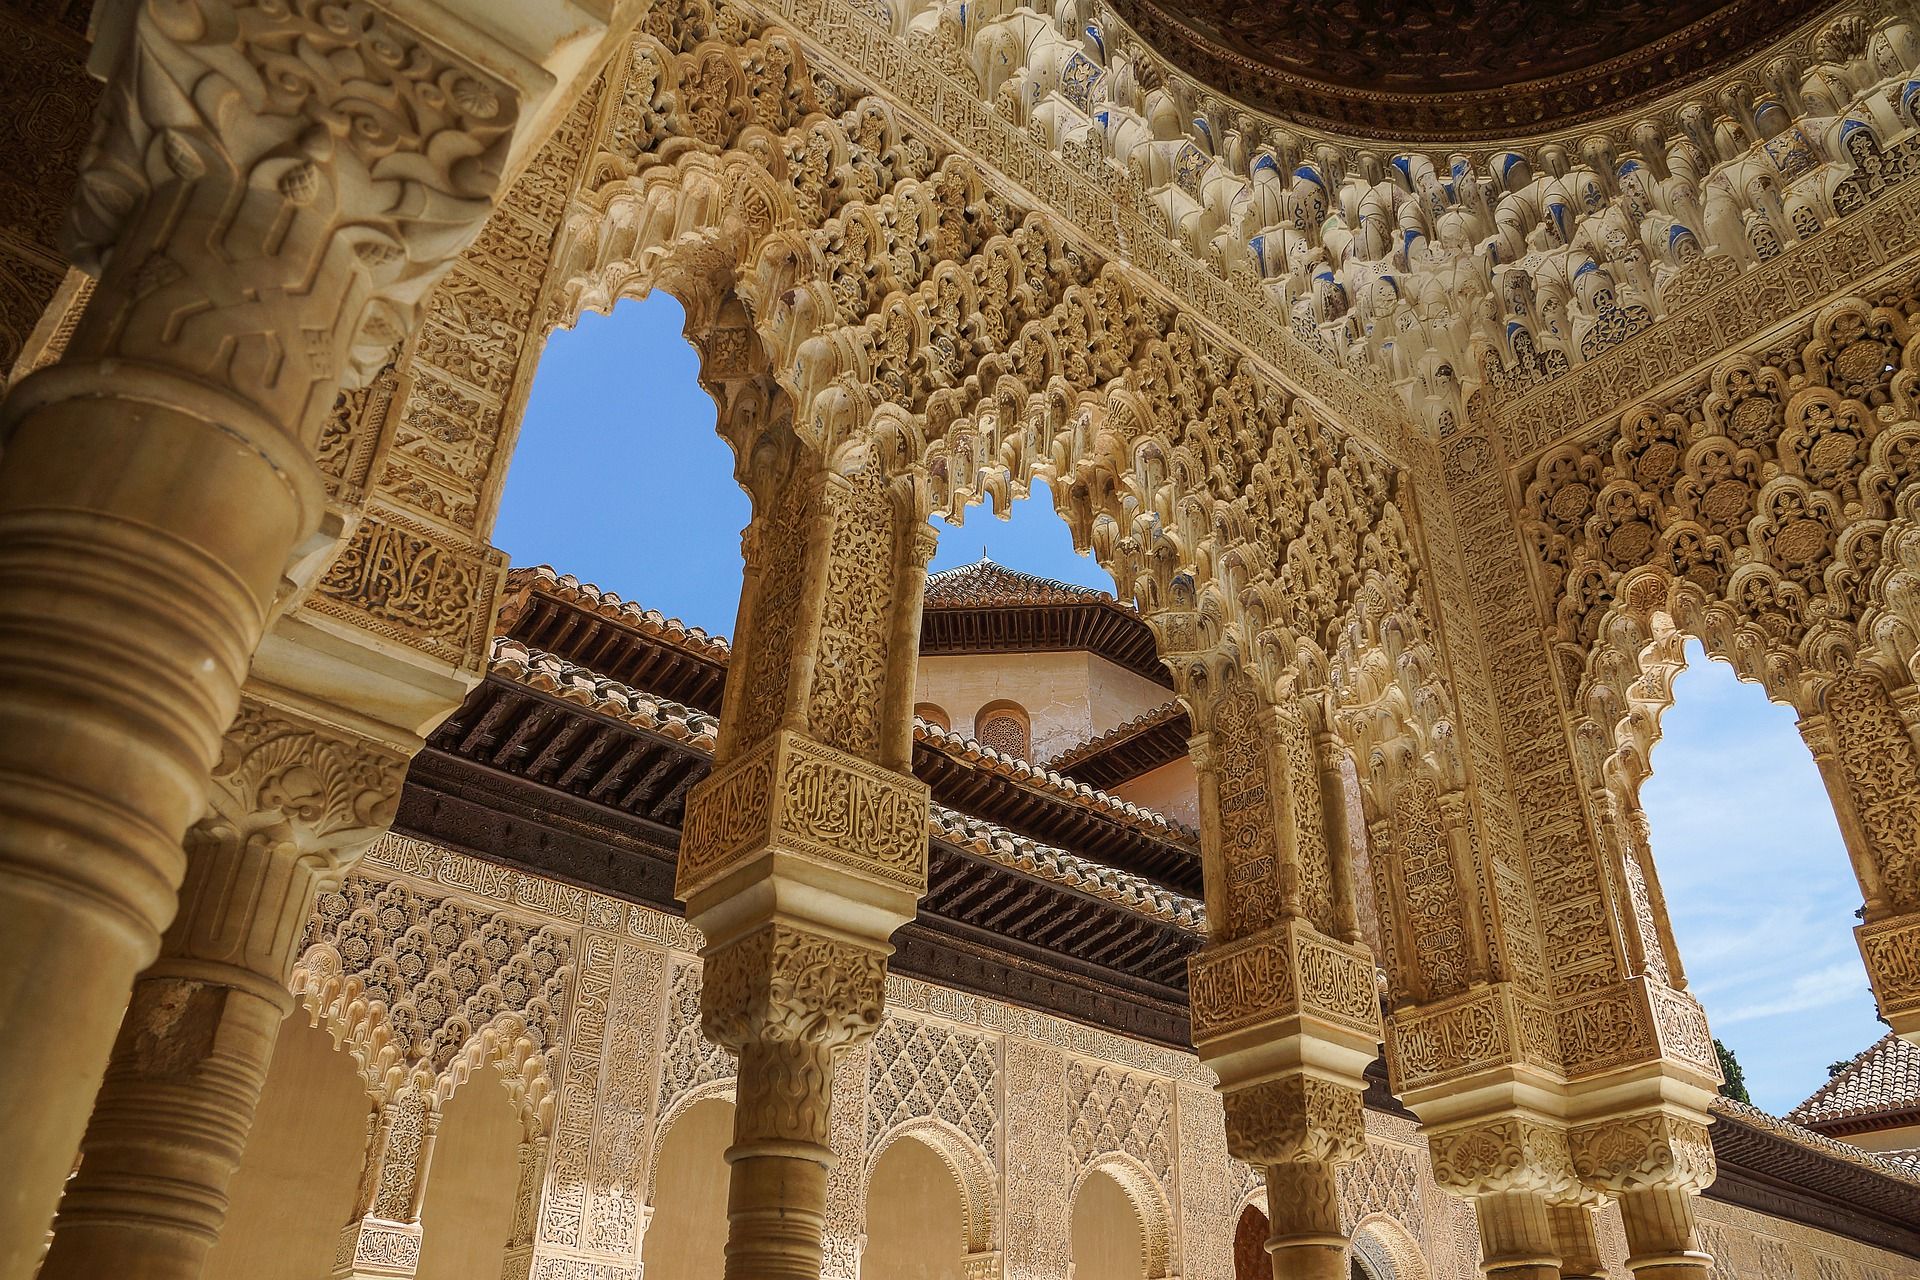 Het Alhambra in Granada - Fly-drive door Zuid-Spanje